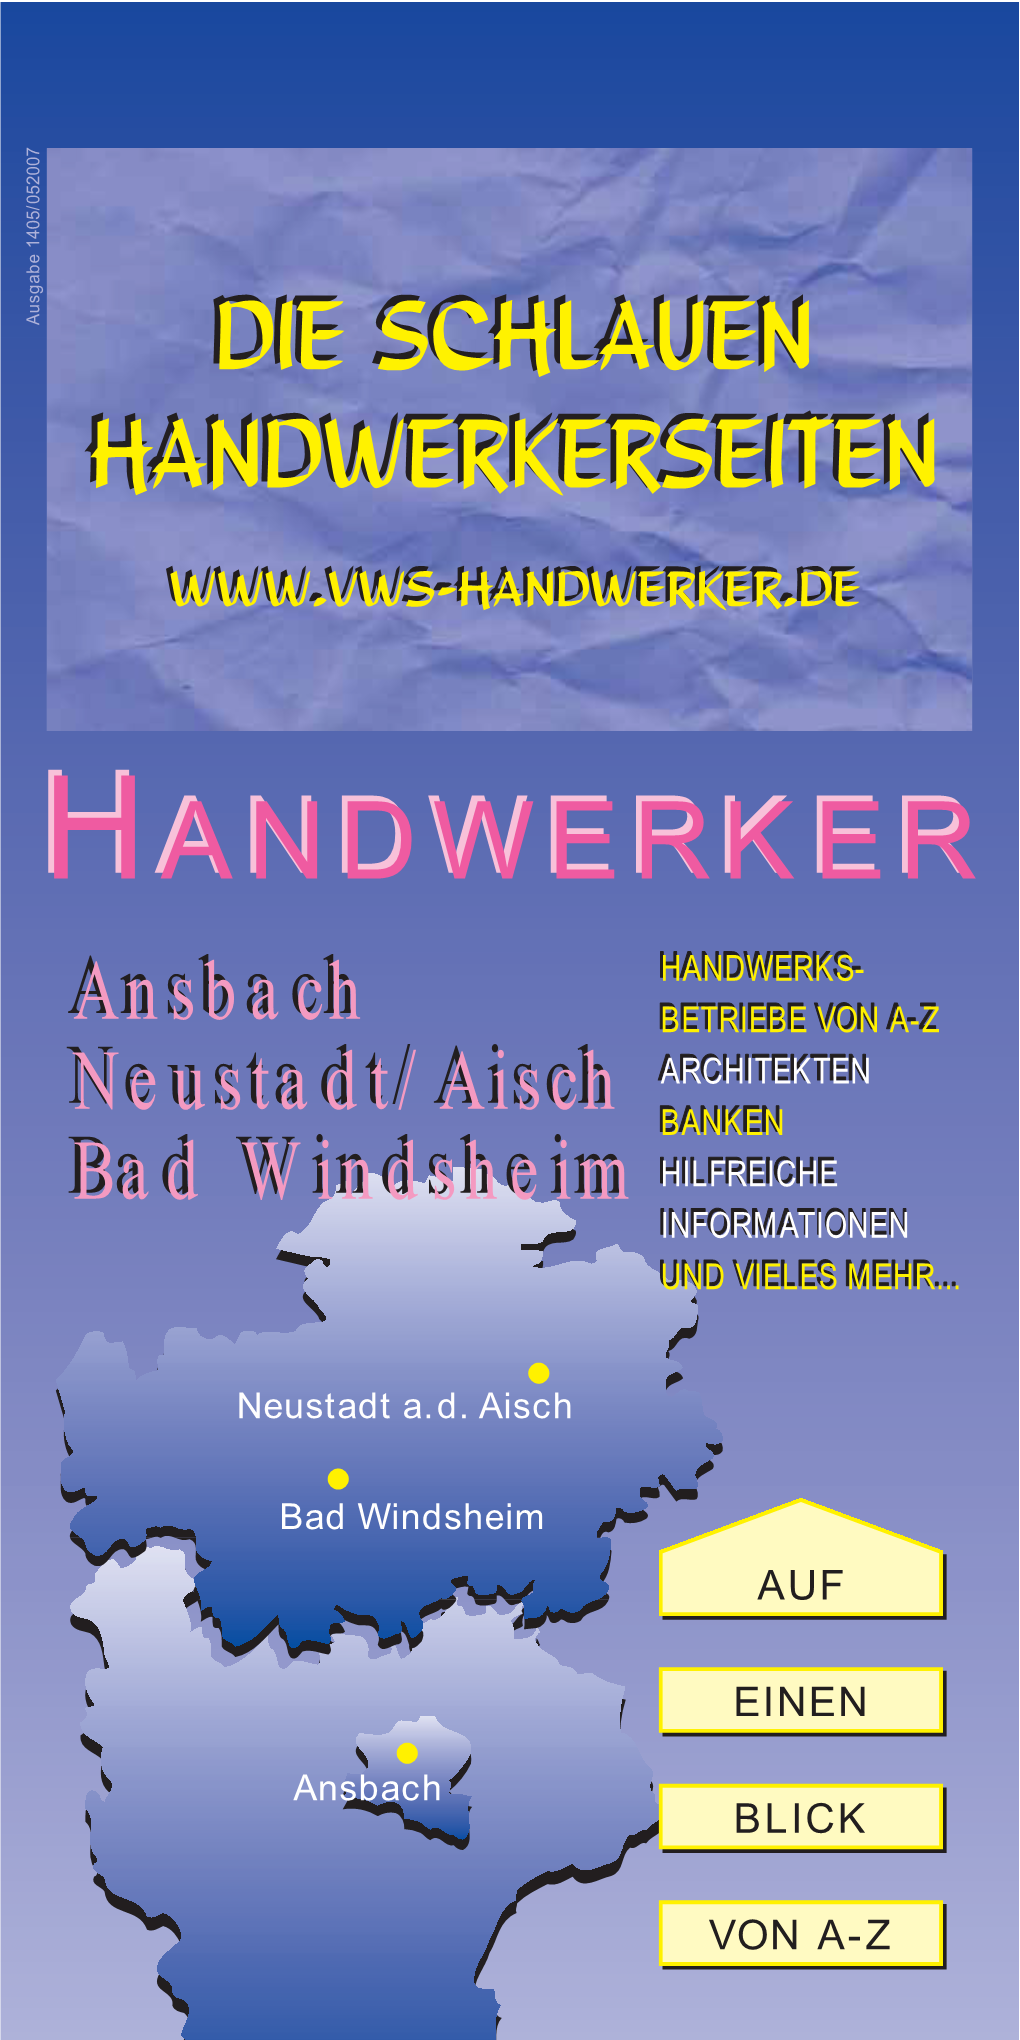 14/05 Anbach/Neustadt-Aisch/Bad Windsheim